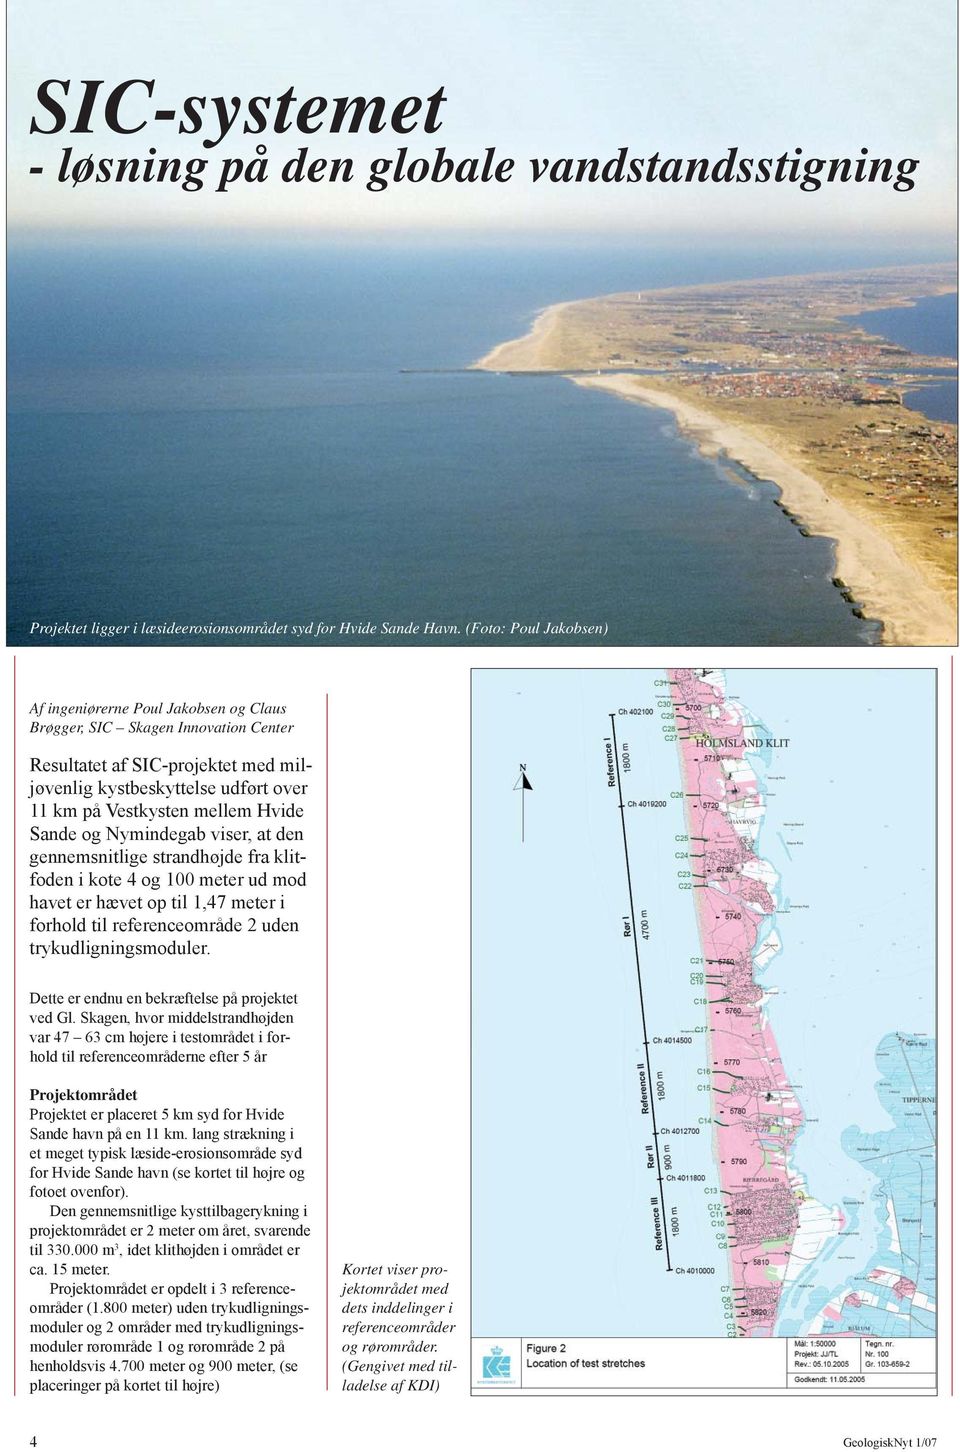 Hvide Sande og Nymindegab viser, at den gennemsnitlige strandhøjde fra klitfoden i kote 4 og 100 meter ud mod havet er hævet op til 1,47 meter i forhold til referenceområde 2 uden